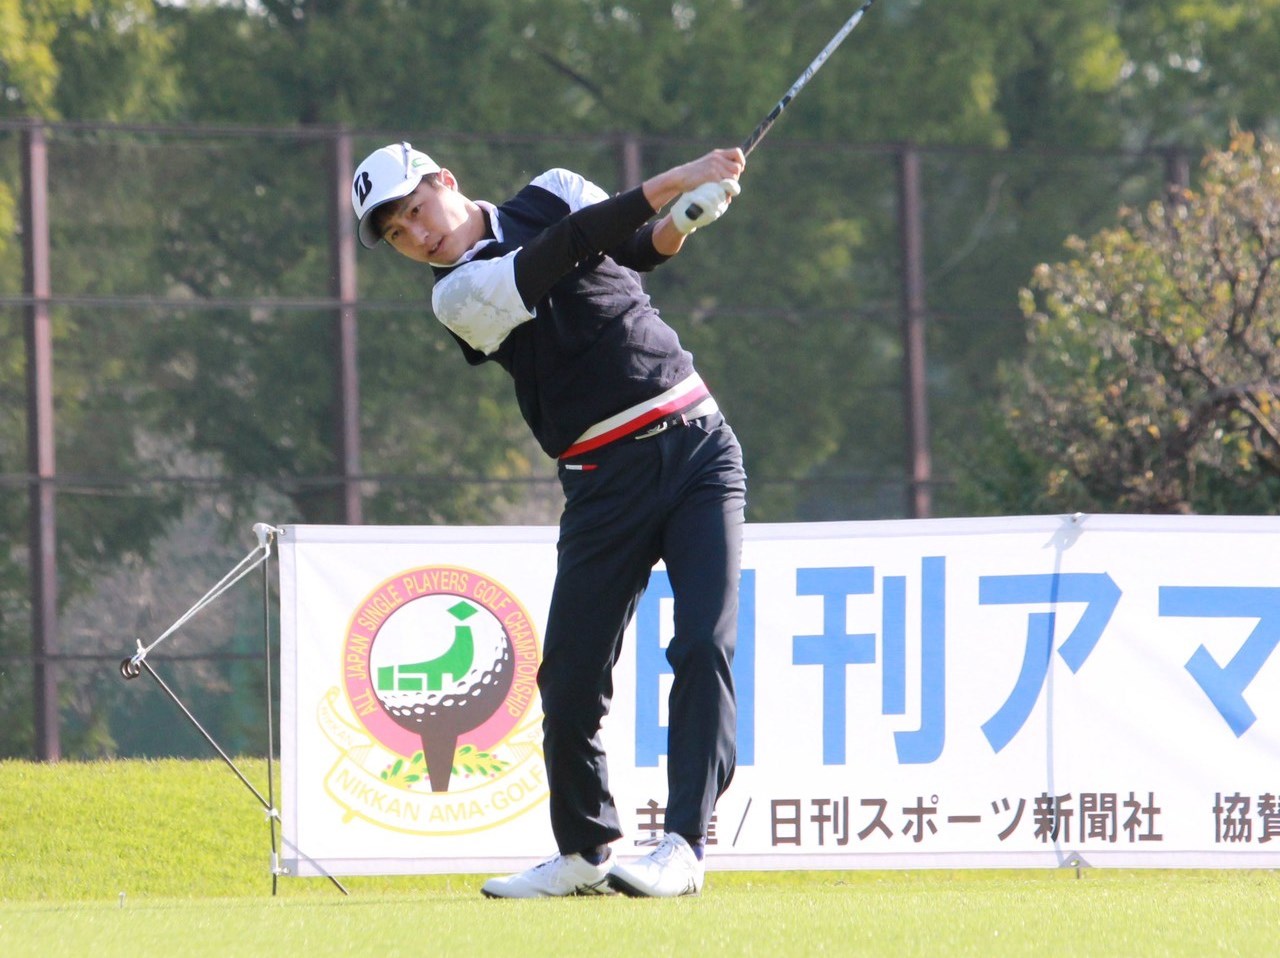 全日本シングルプレーヤーズゴルフ選手権日刊アマゴルフ選手権